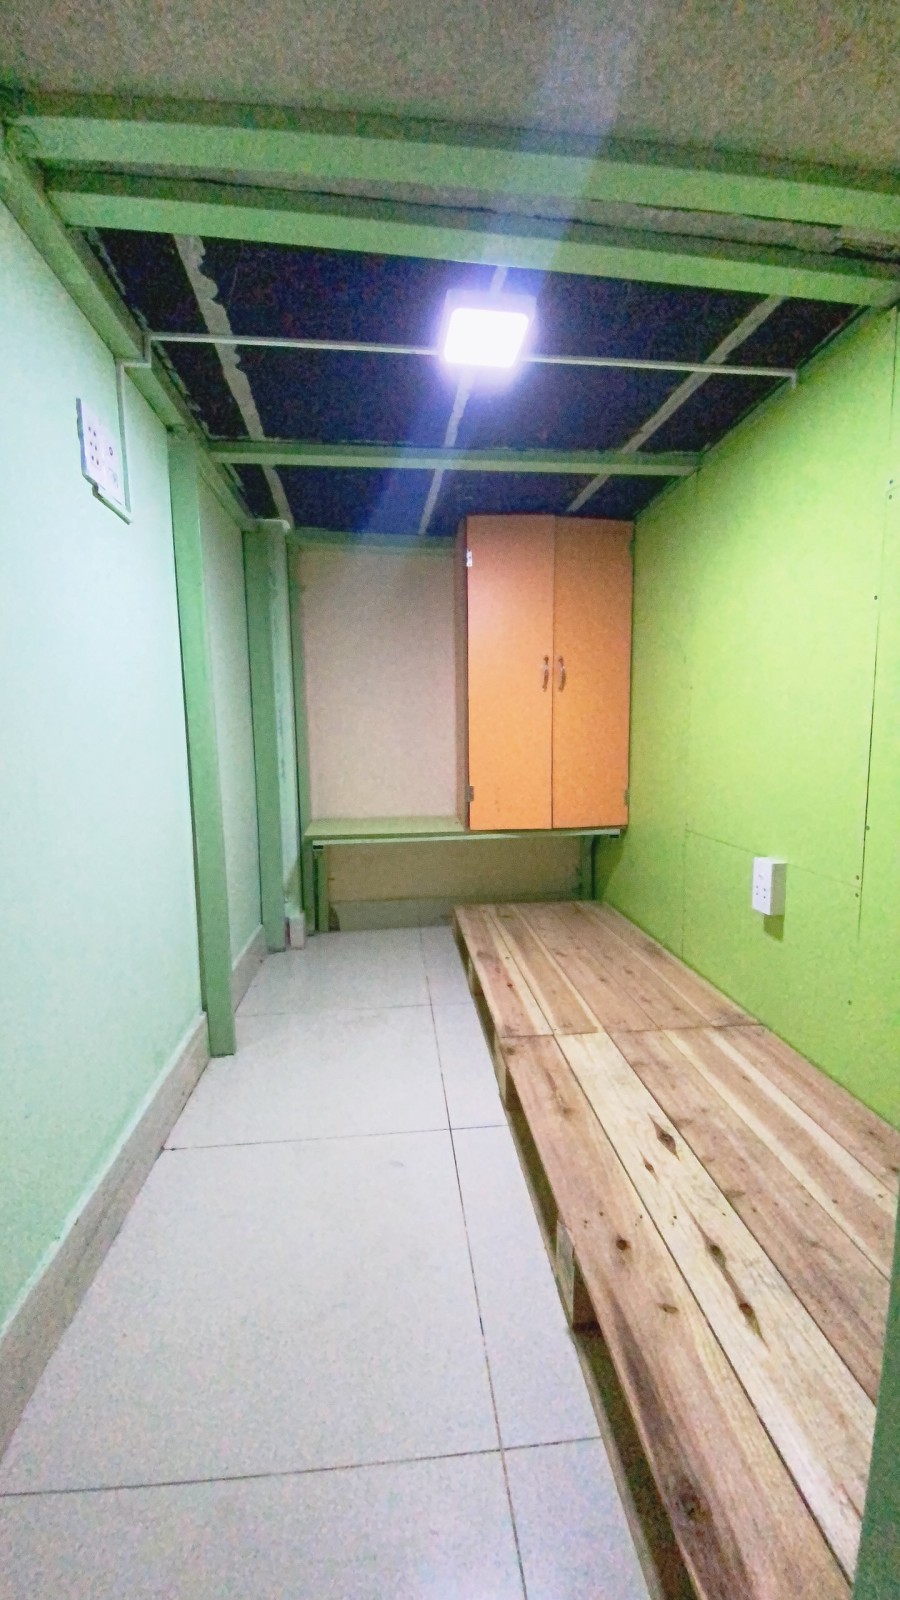 KTX sleepbox không gian riêng tư tại Ung Văn Khiêm, Phường 25, Quận Bình Thạnh